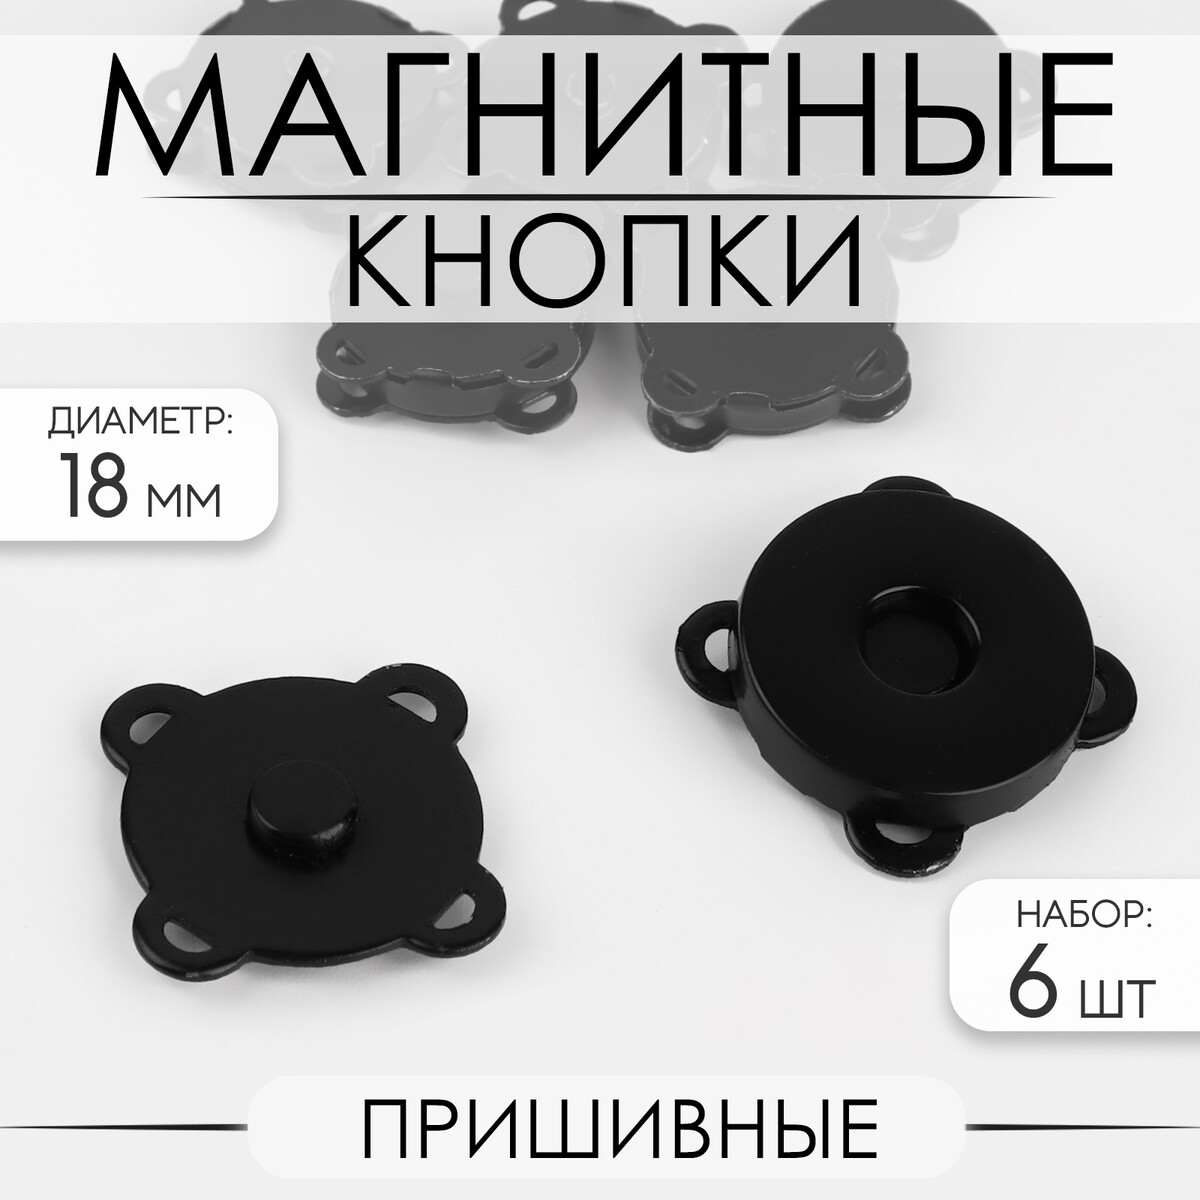 Кнопки магнитные, пришивные, d = 18 мм, 6 шт, цвет черный матовый